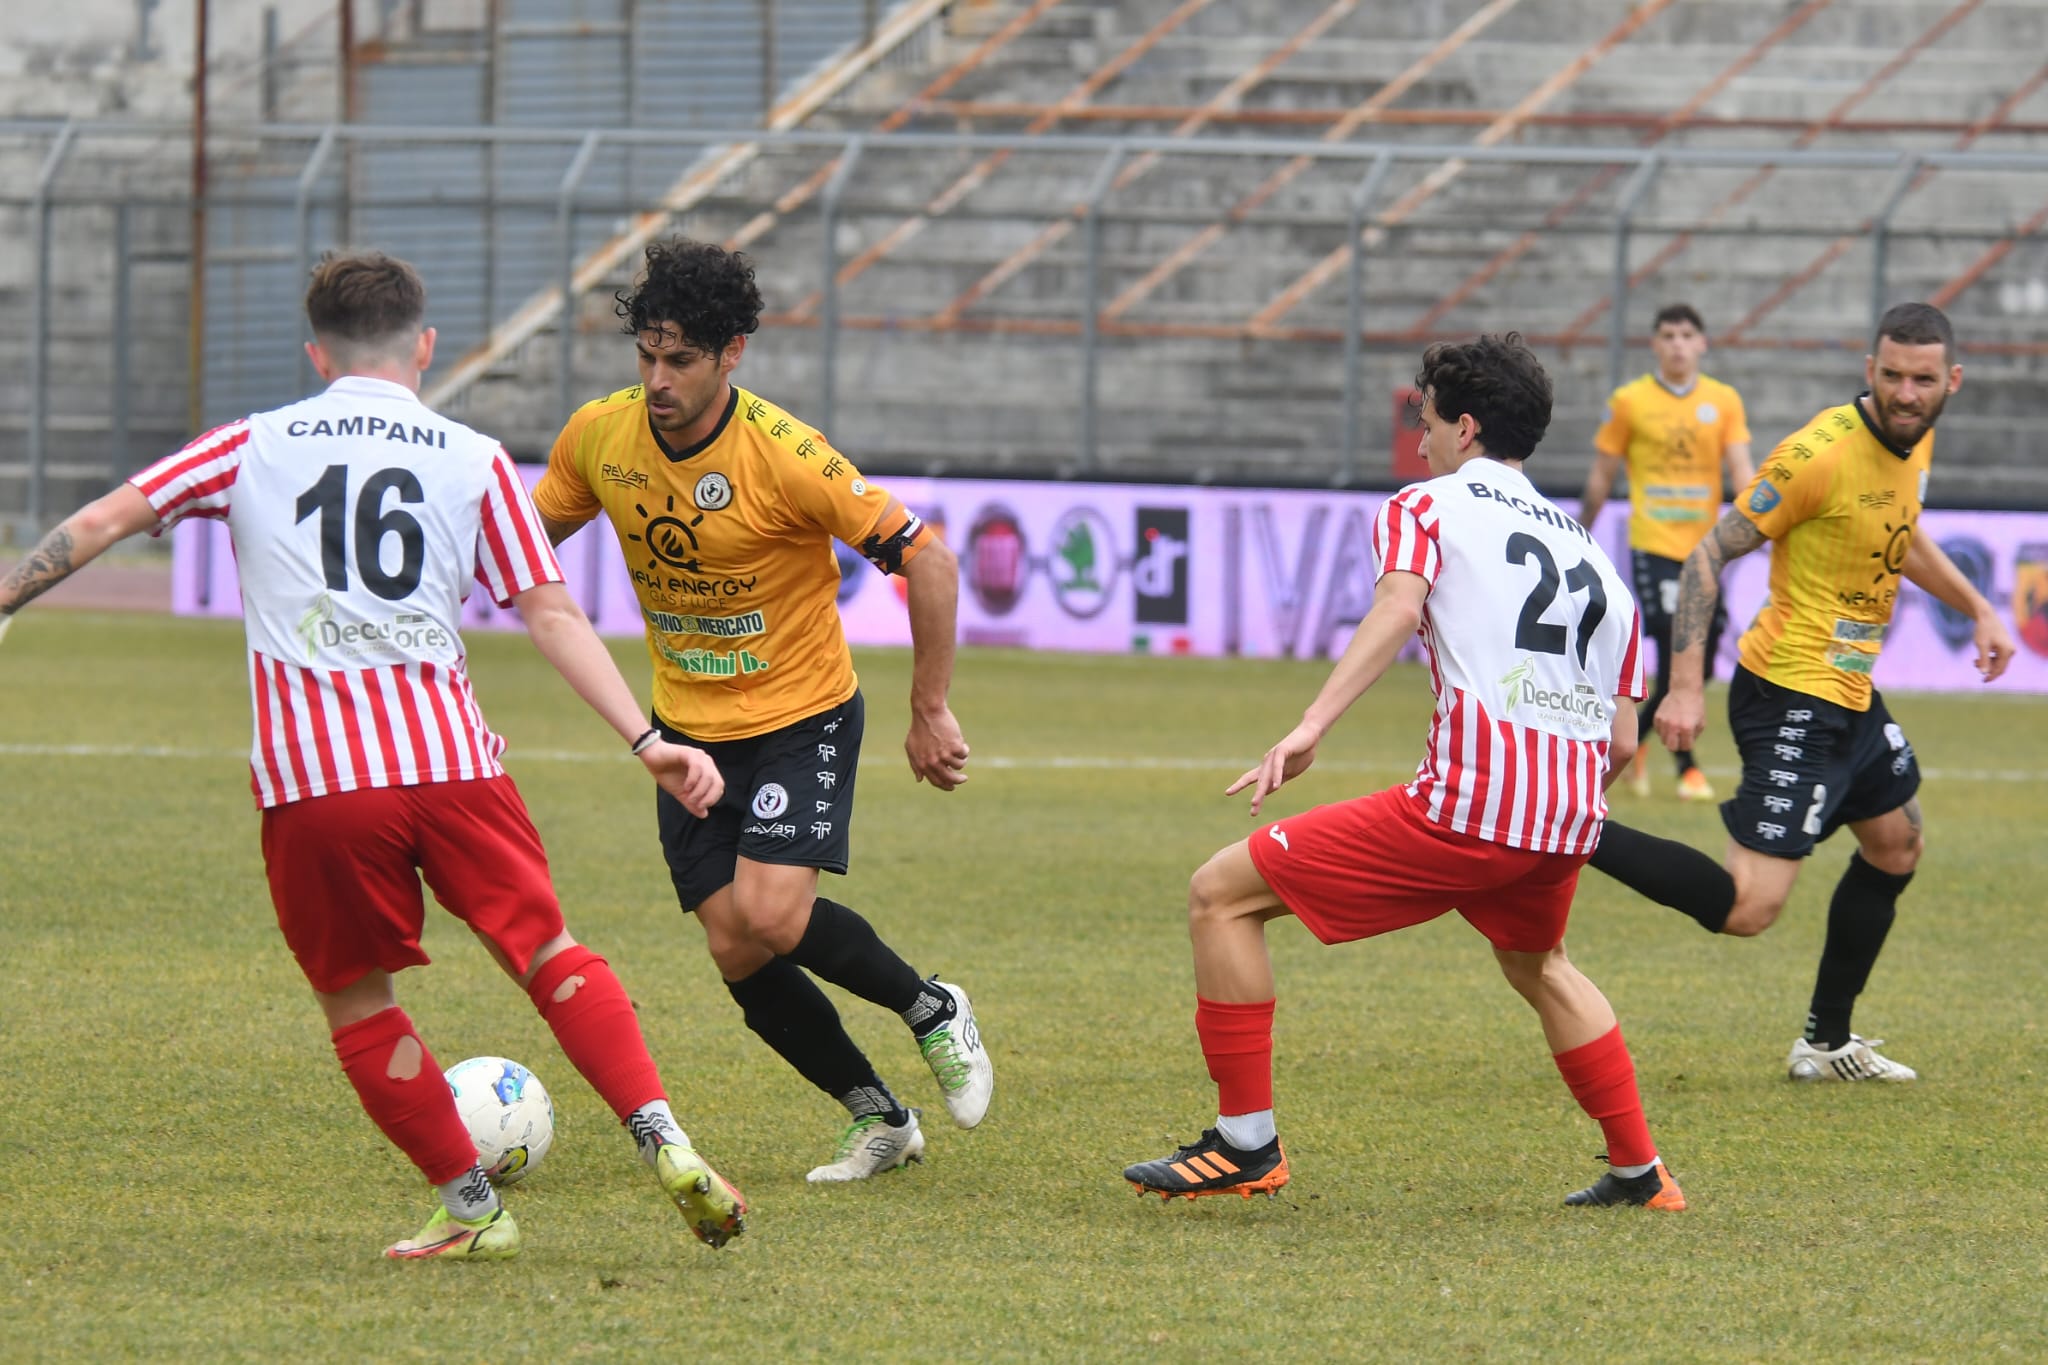 Calcio: Arezzo 2 – Ghiviborgo 0